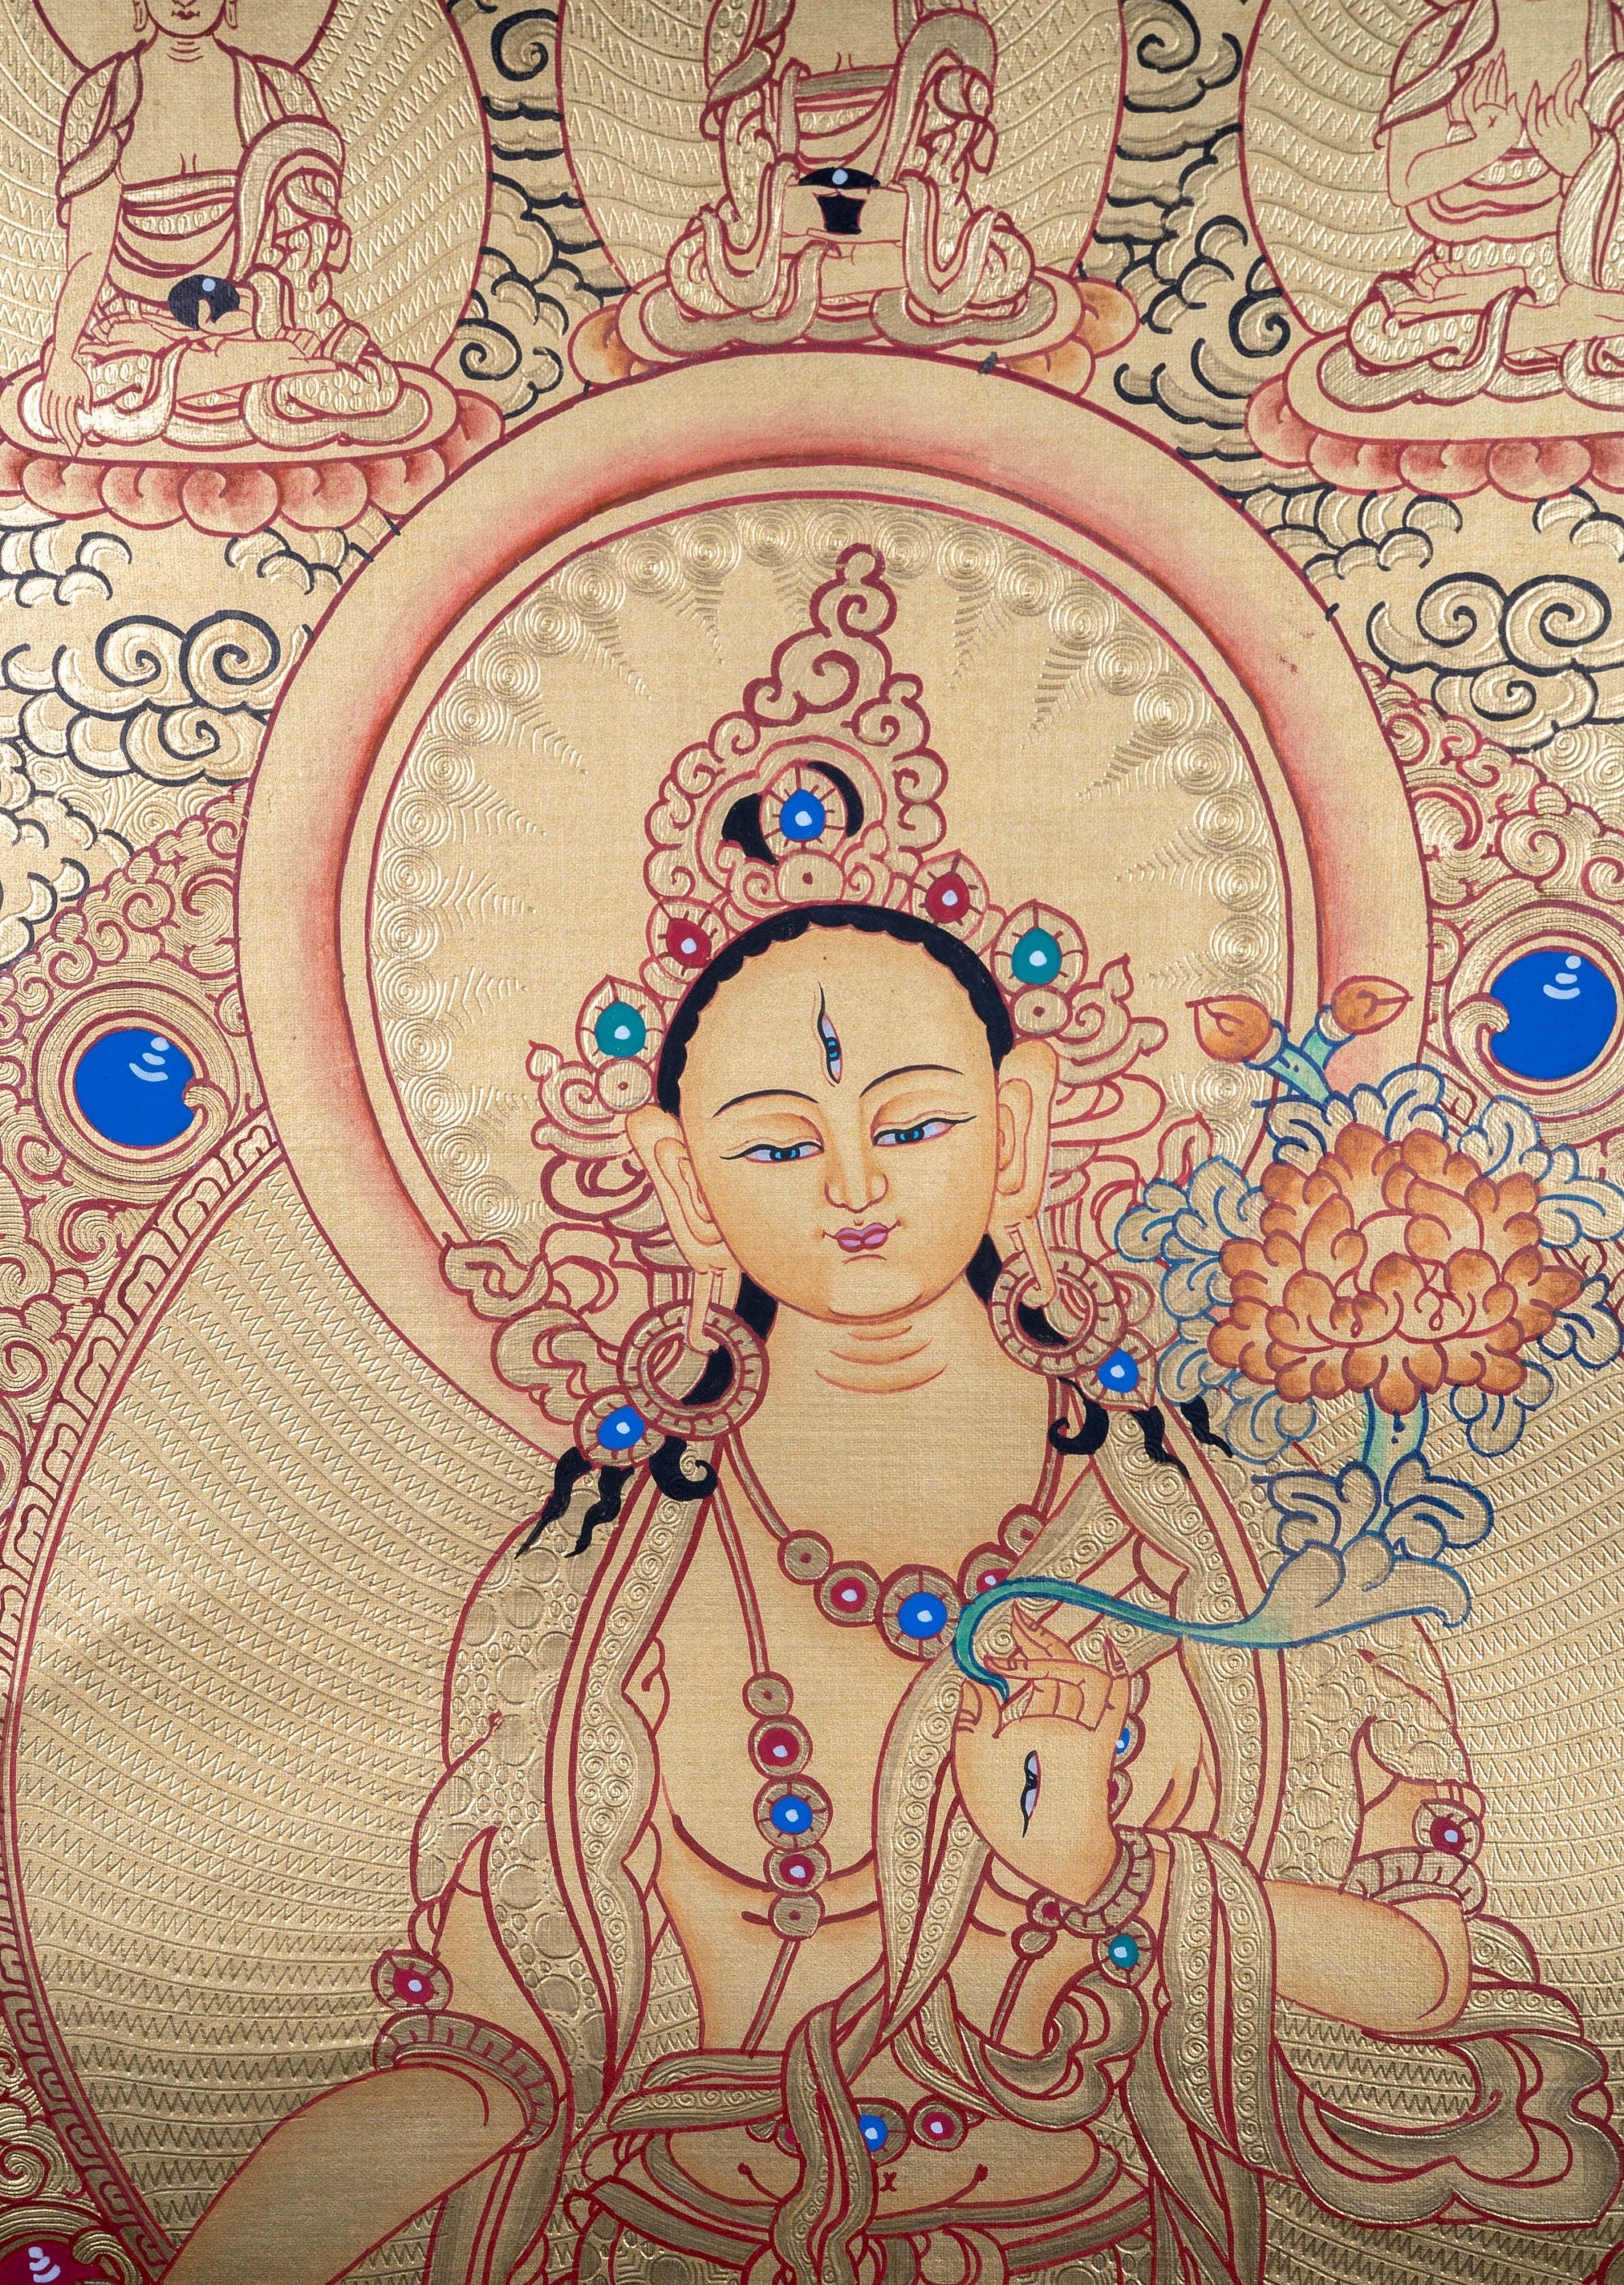 White Tara with Five Buddhas Thangka - Lucky Thanka